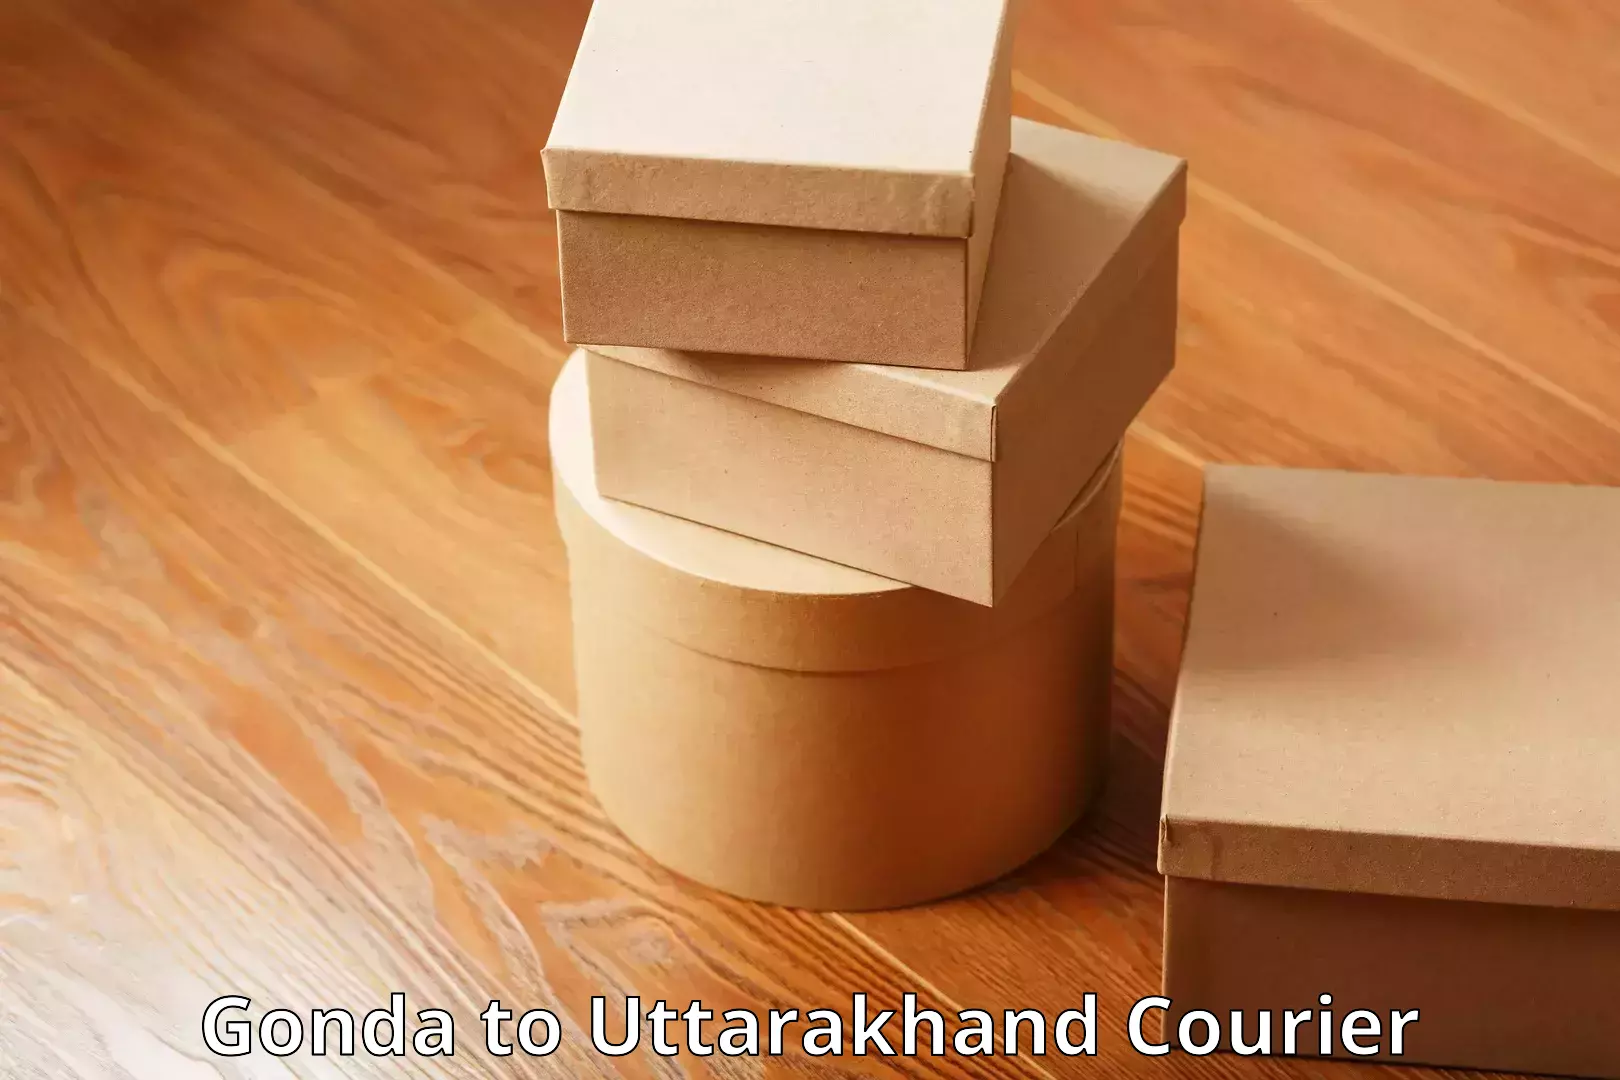 Luggage shipment tracking Gonda to Uttarakhand